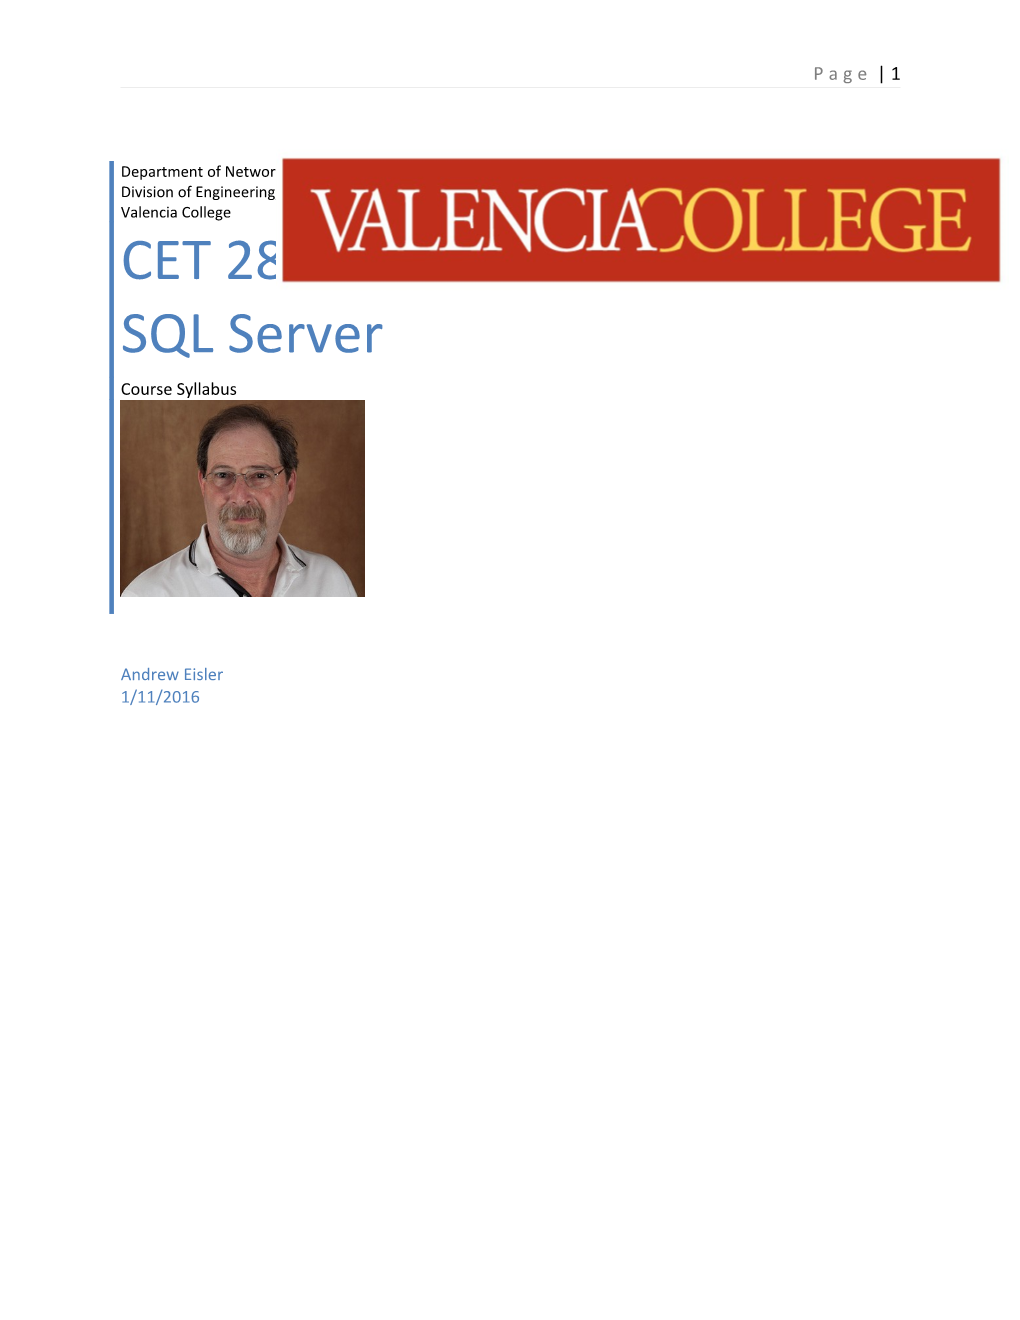 CET 2812 Microsoft SQL Server